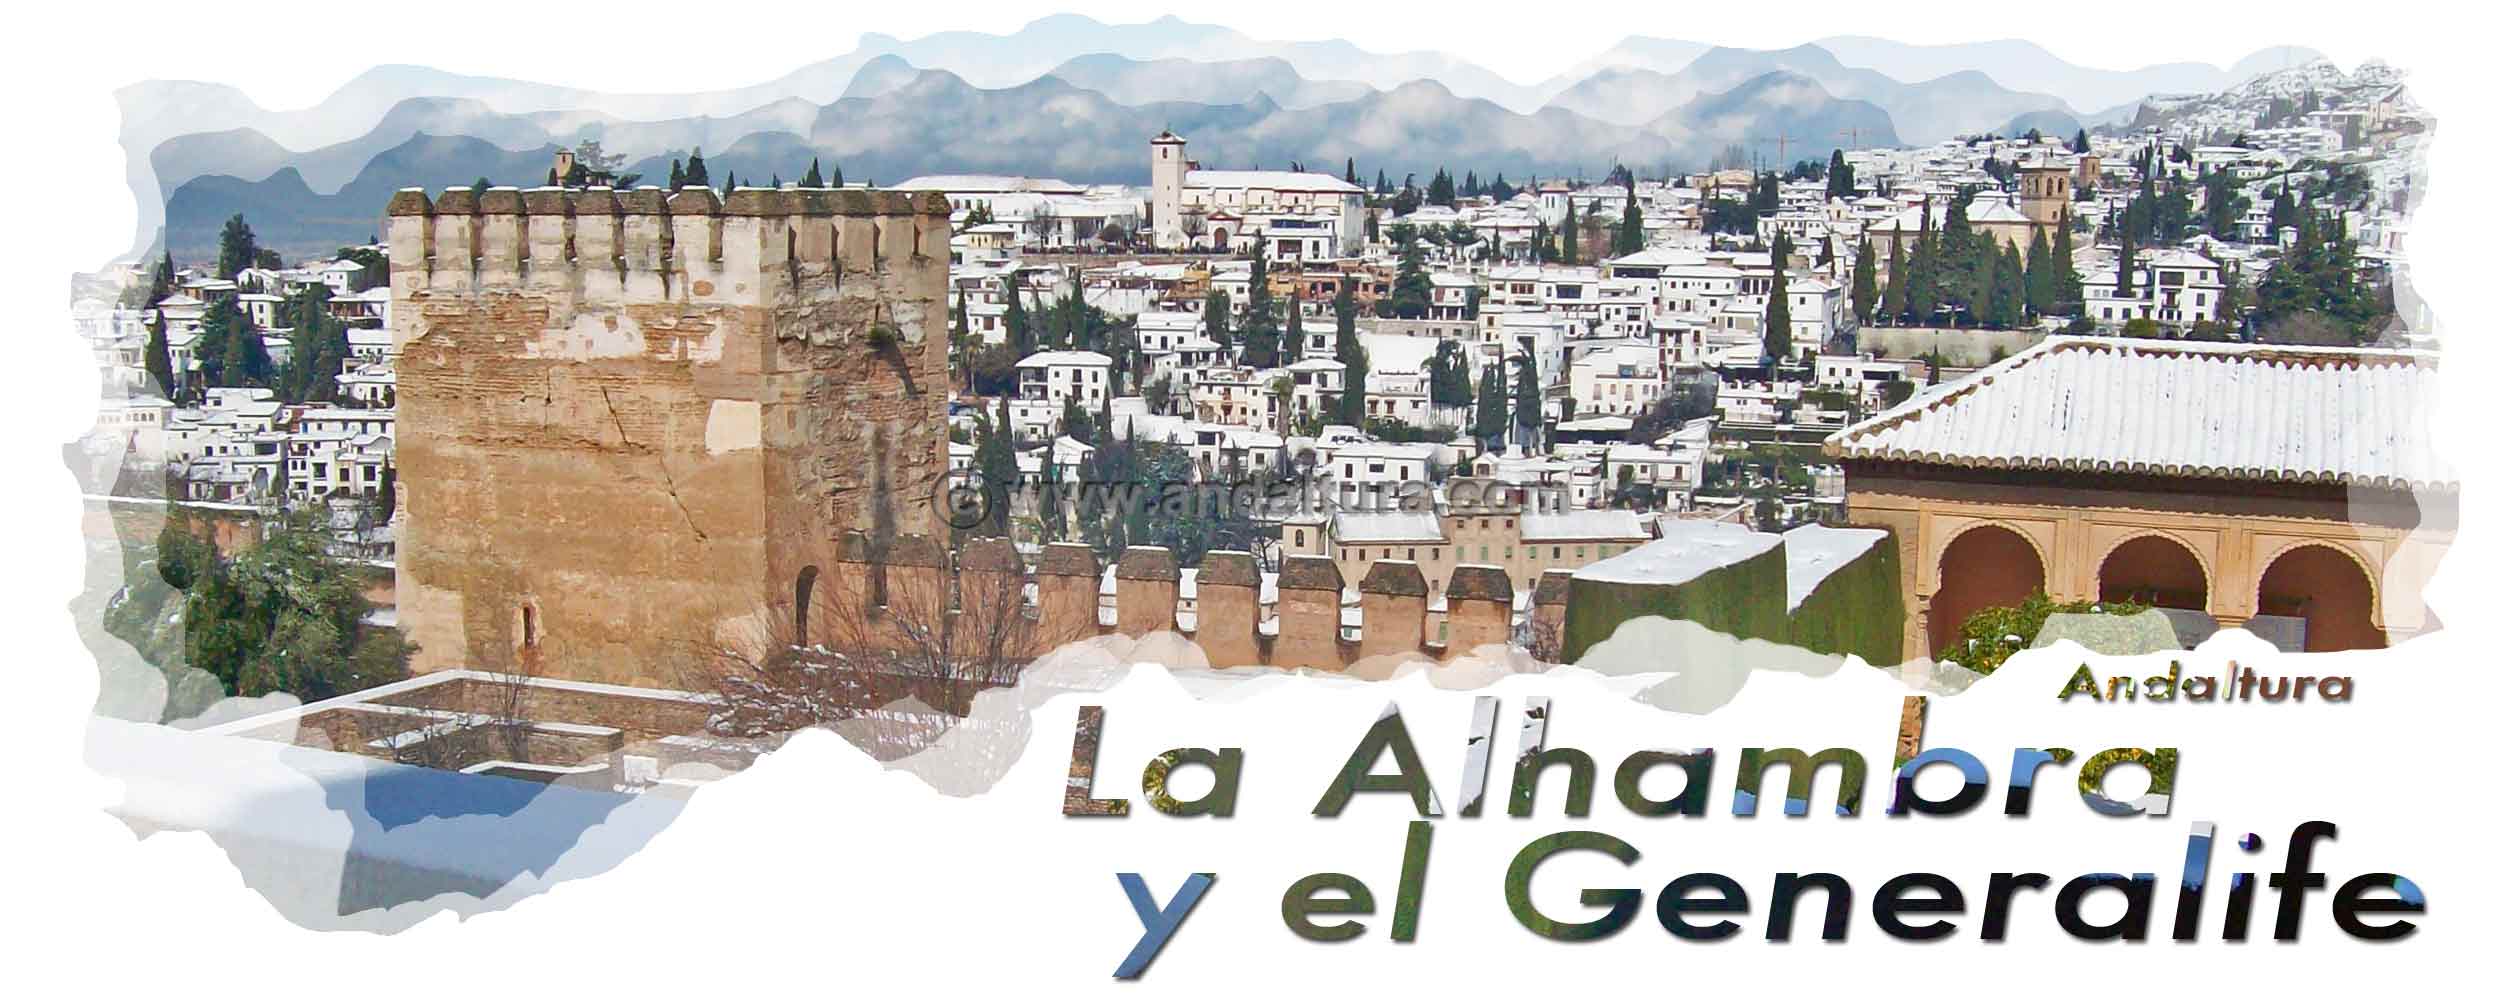 Torre de Muhammad, al fondo el Albaycín - Cabecera Turnos y Combinaciones de la Alhambra y el Generalife